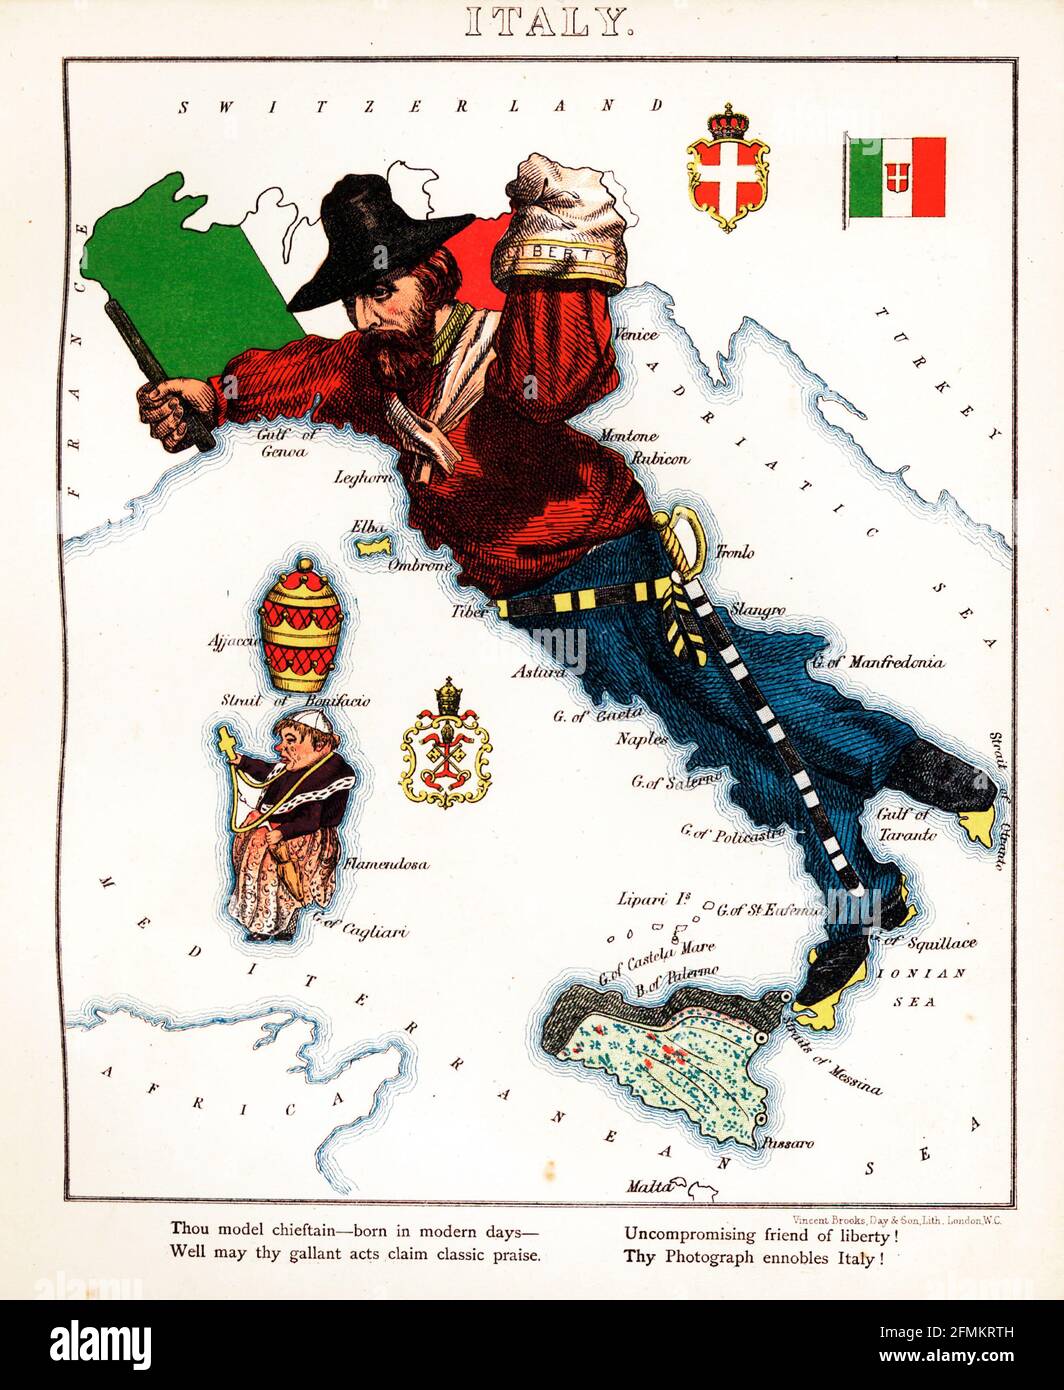 Italia – divertimento geografico. Mappa satirica / cartografica illustrata. Pubblicato a Londra dalla ditta di Hodder e Stoughton nel 1869. Foto Stock